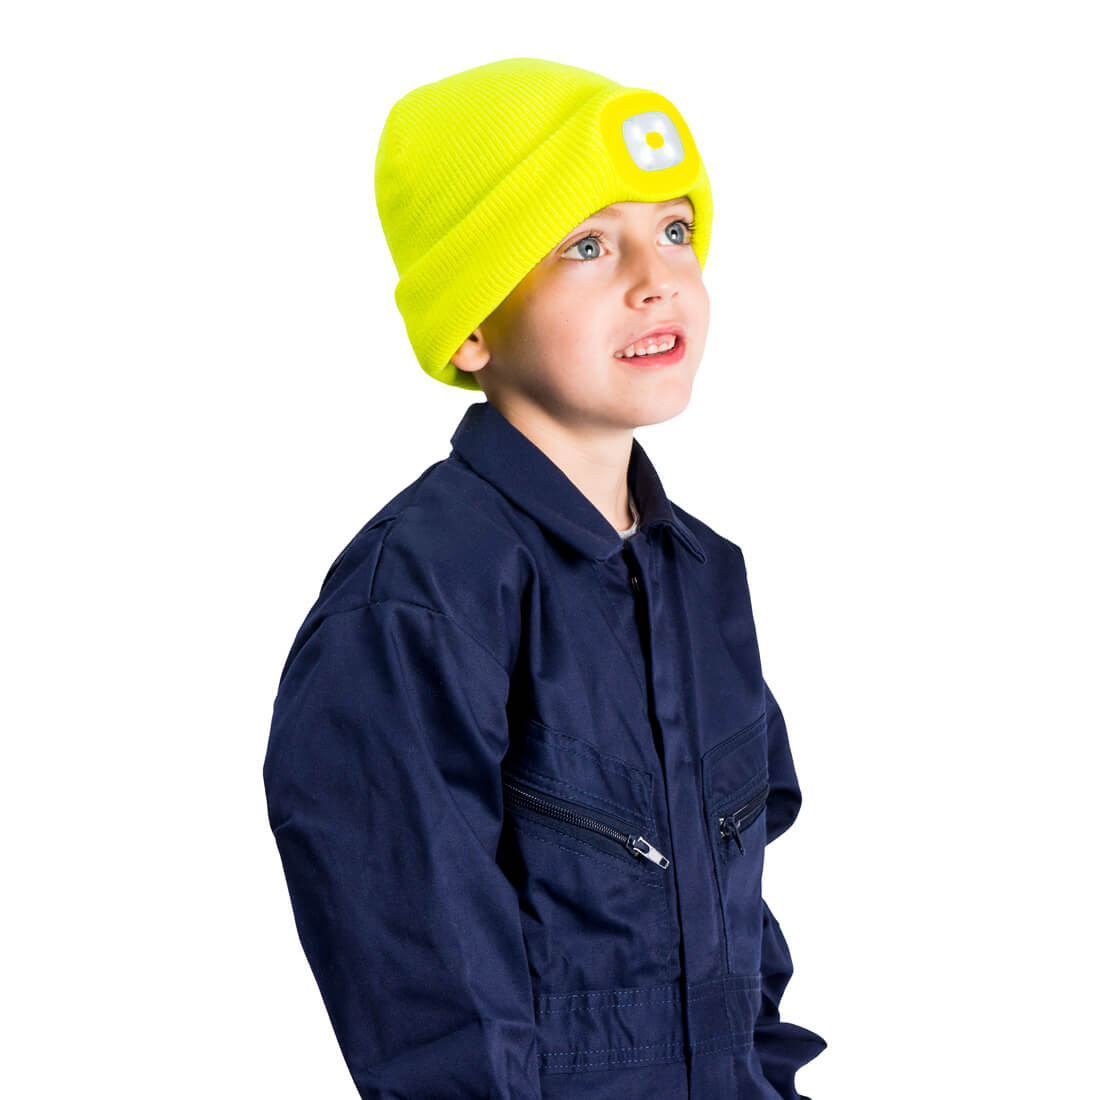 Kindermütze mit LED Kopflicht - Arbeitskleidung